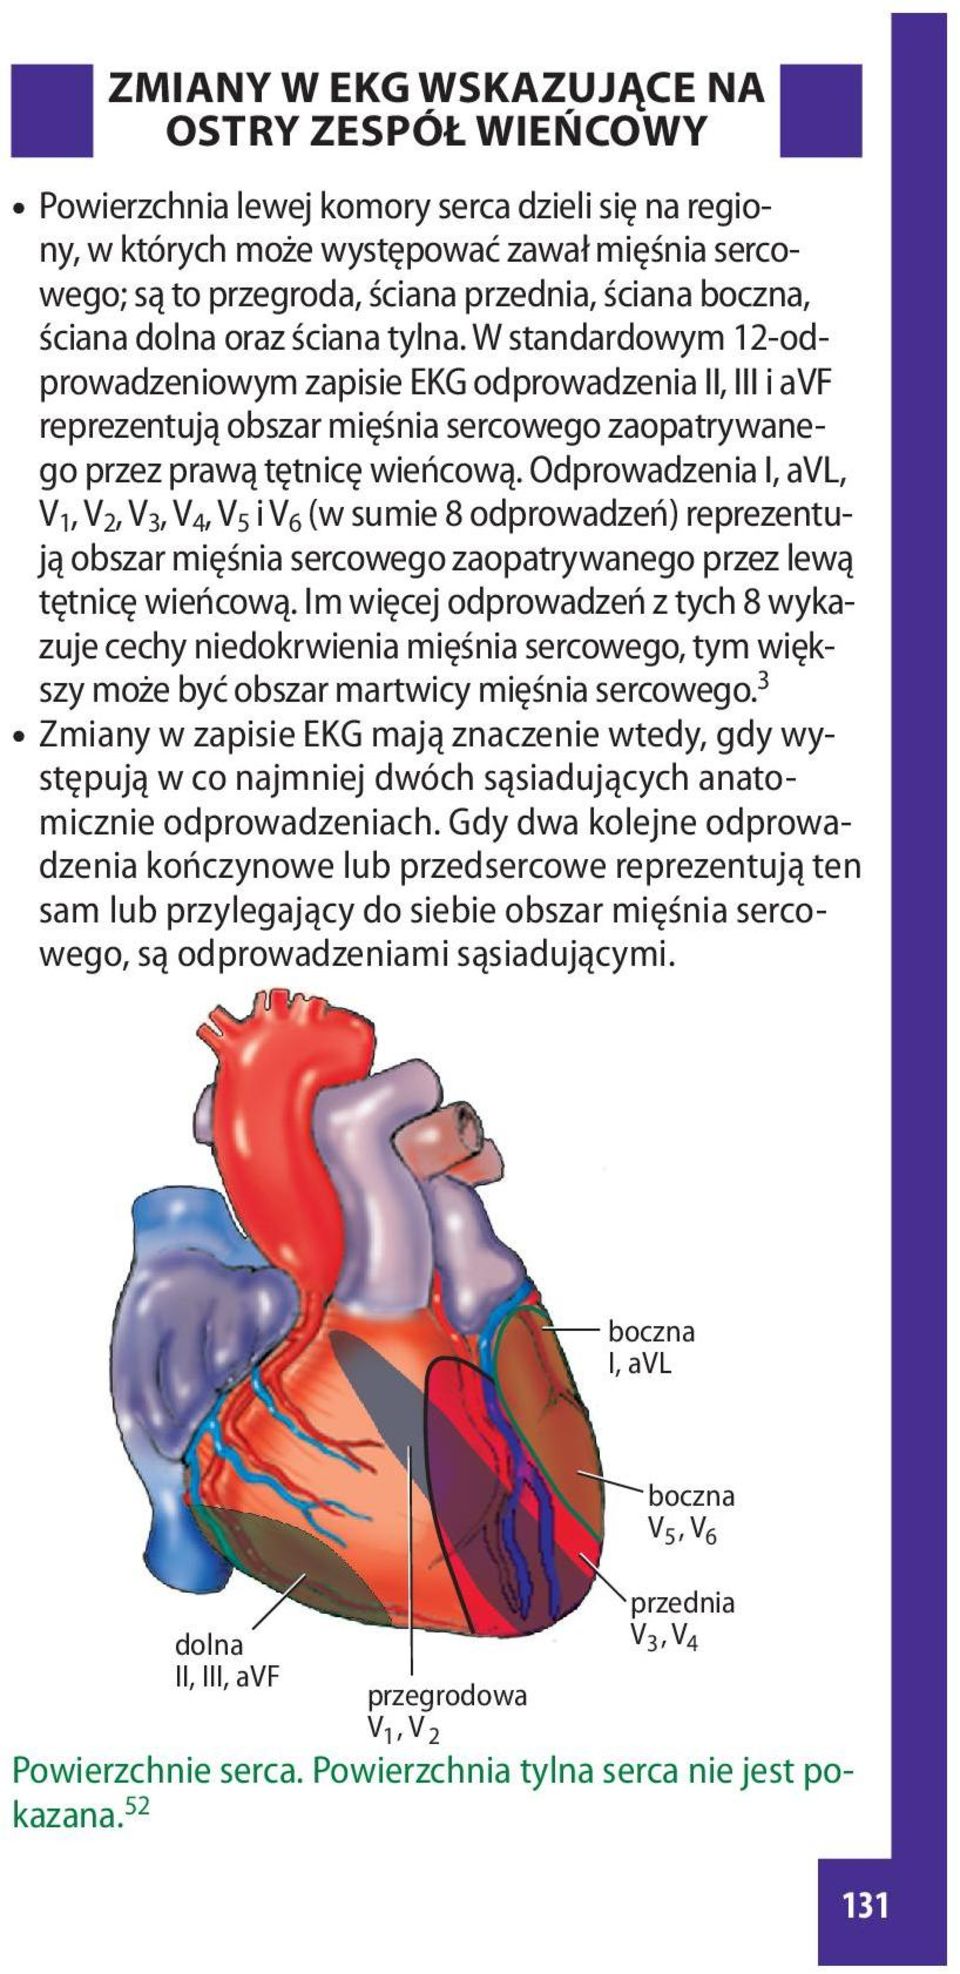 Odprowadzenia I, avl, V 1, V 2, V 3, V 4, V 5 i V 6 (w sumie 8 odprowadzeń) reprezentują obszar mięśnia sercowego zaopatrywanego przez lewą tętnicę wieńcową.